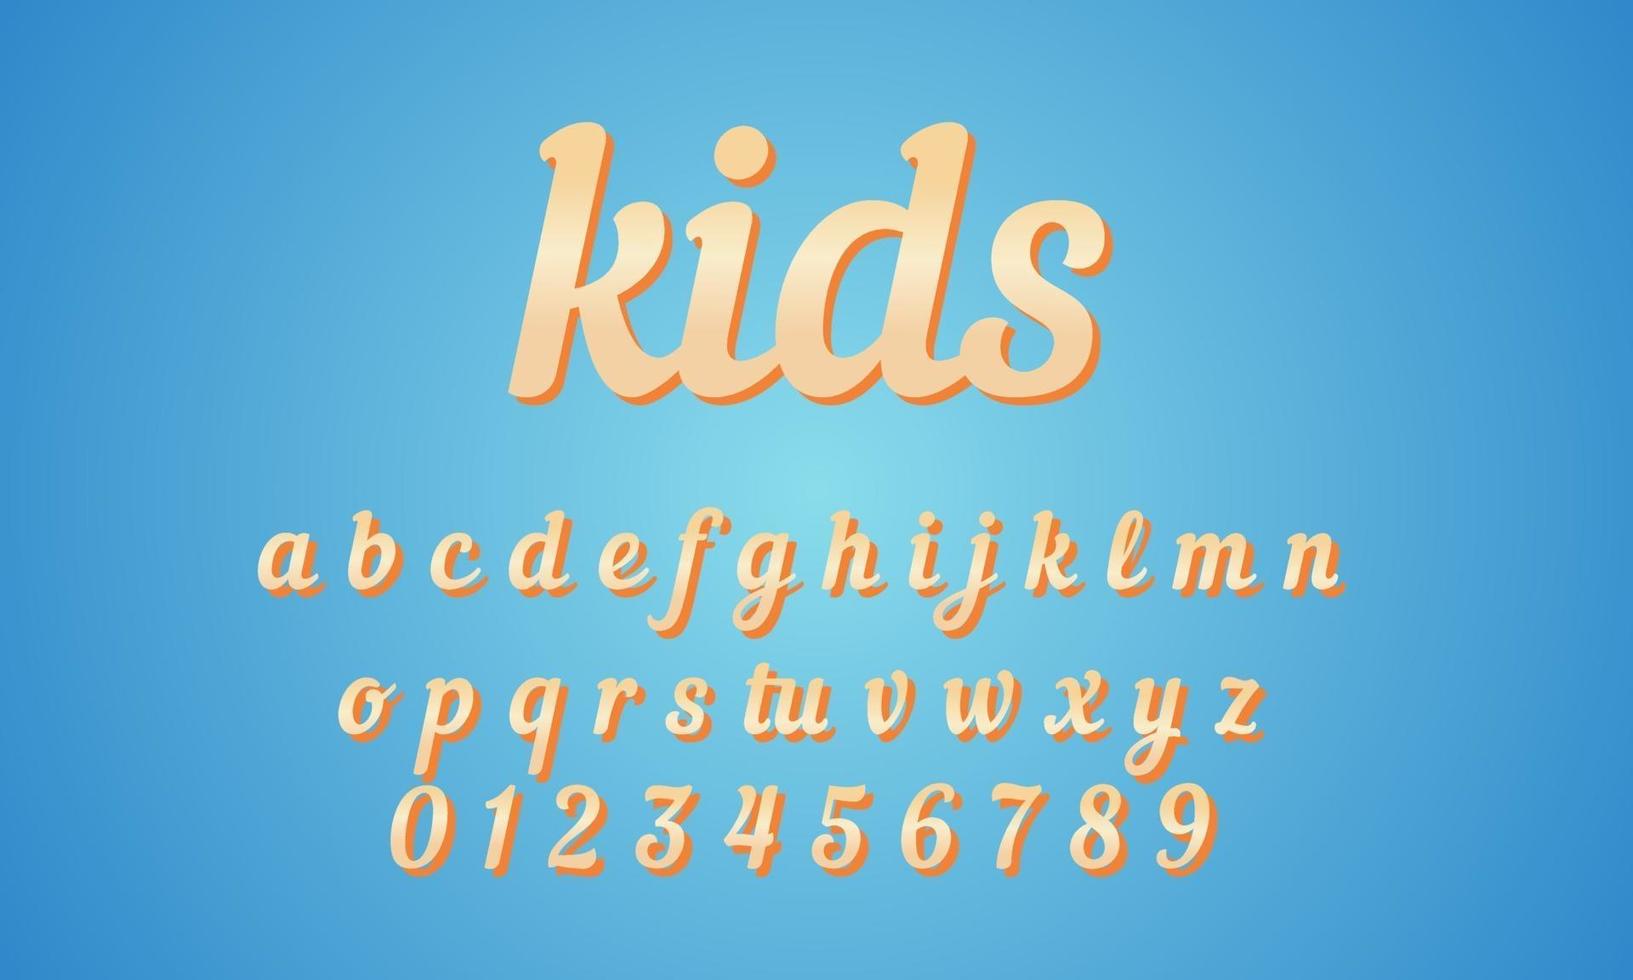 vector van gestileerde lettertype alfabet